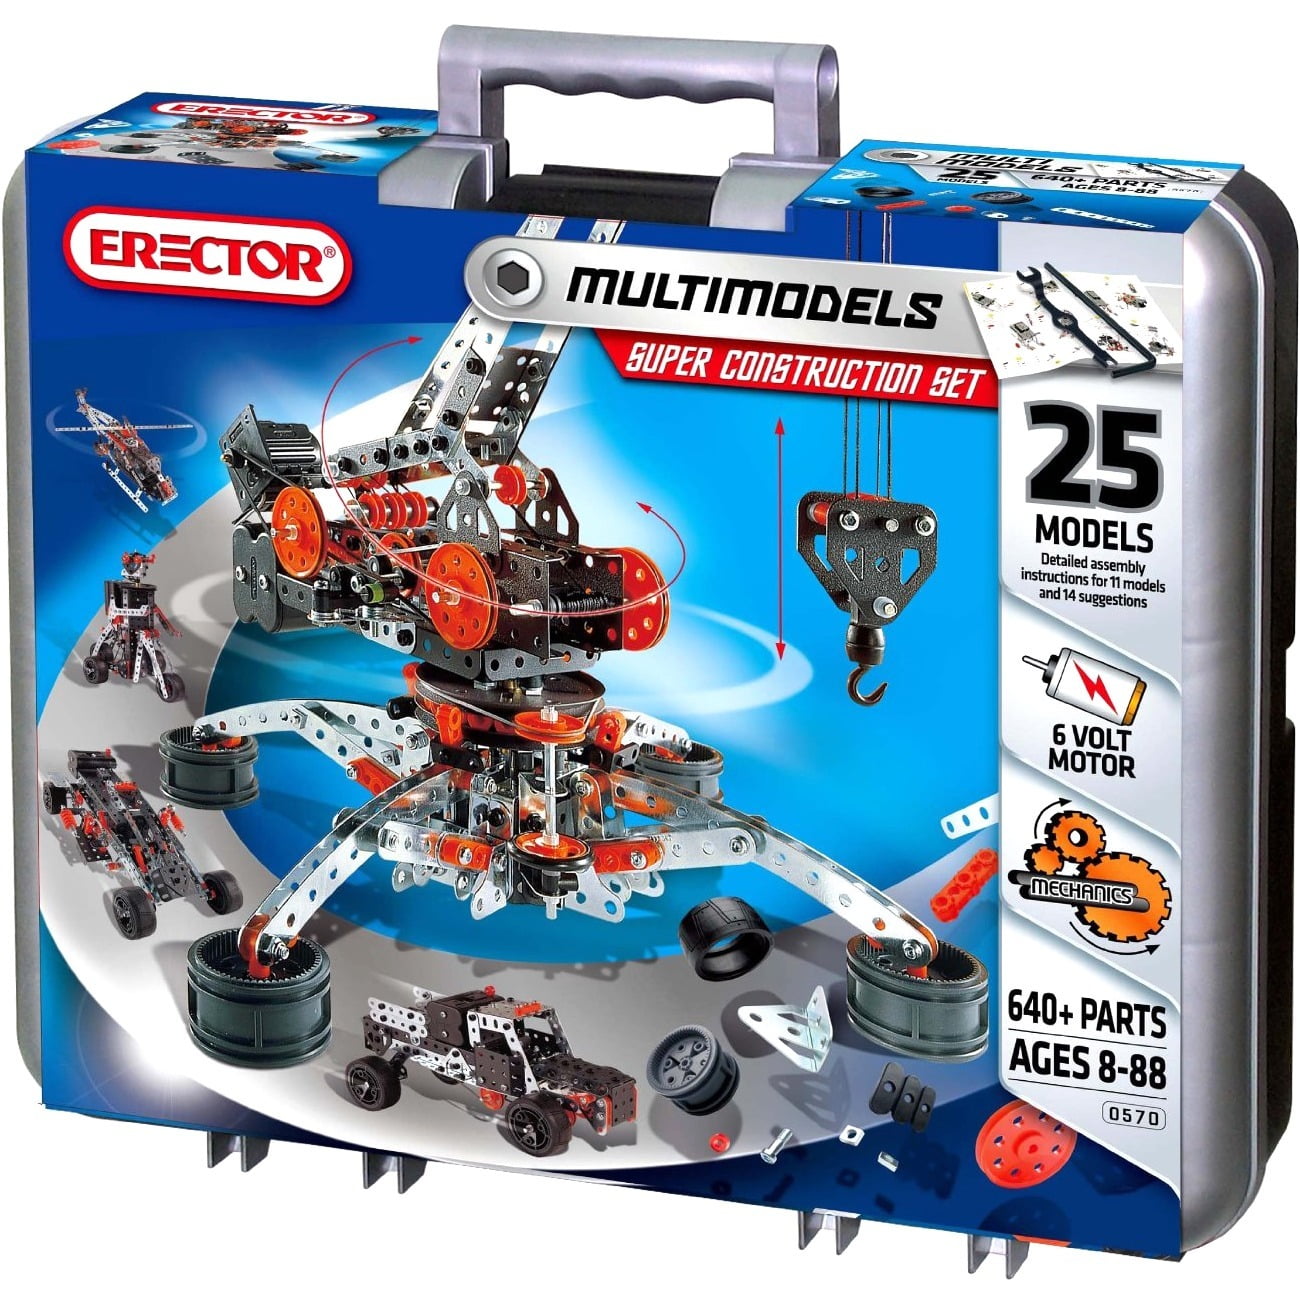 Meccano Erector Super Construction Set 25 Models